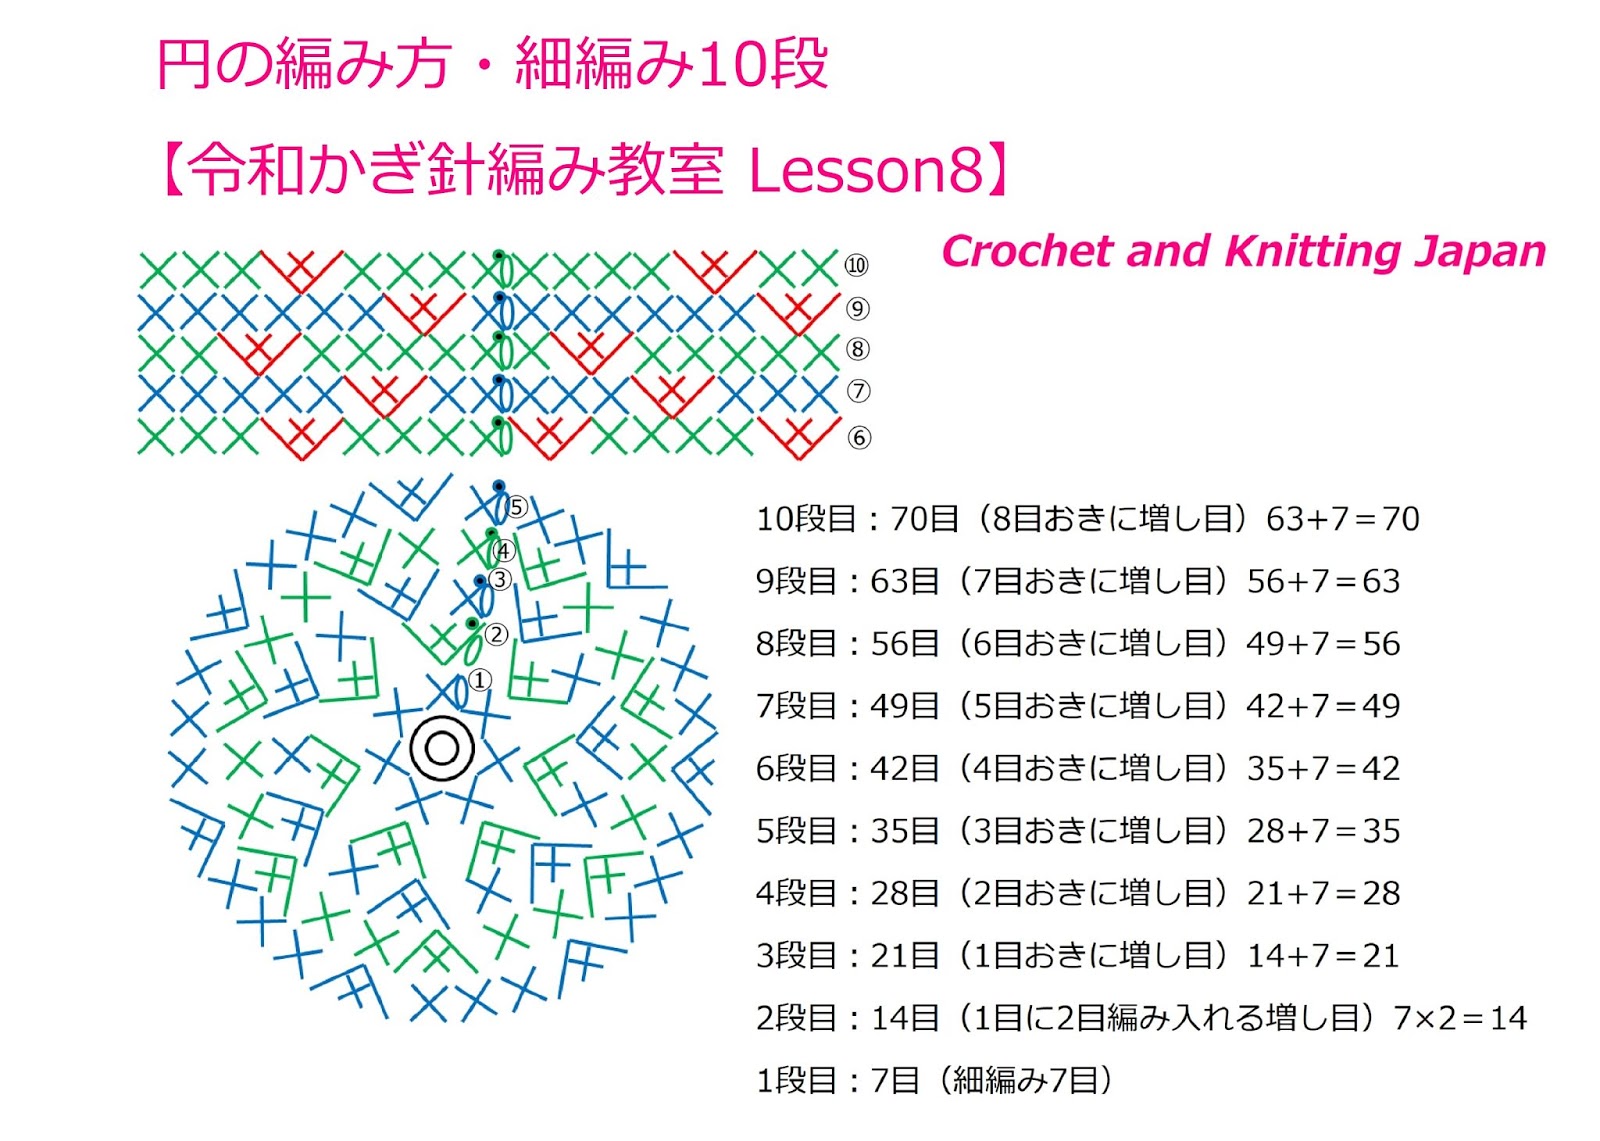 かぎ編み Crochet Japan クロッシェジャパン 細編みの円の編み方 5段目まで 令和かぎ針編み教室 Lesson6 Reiwa Crochet Class Crochet And Knitting Japan